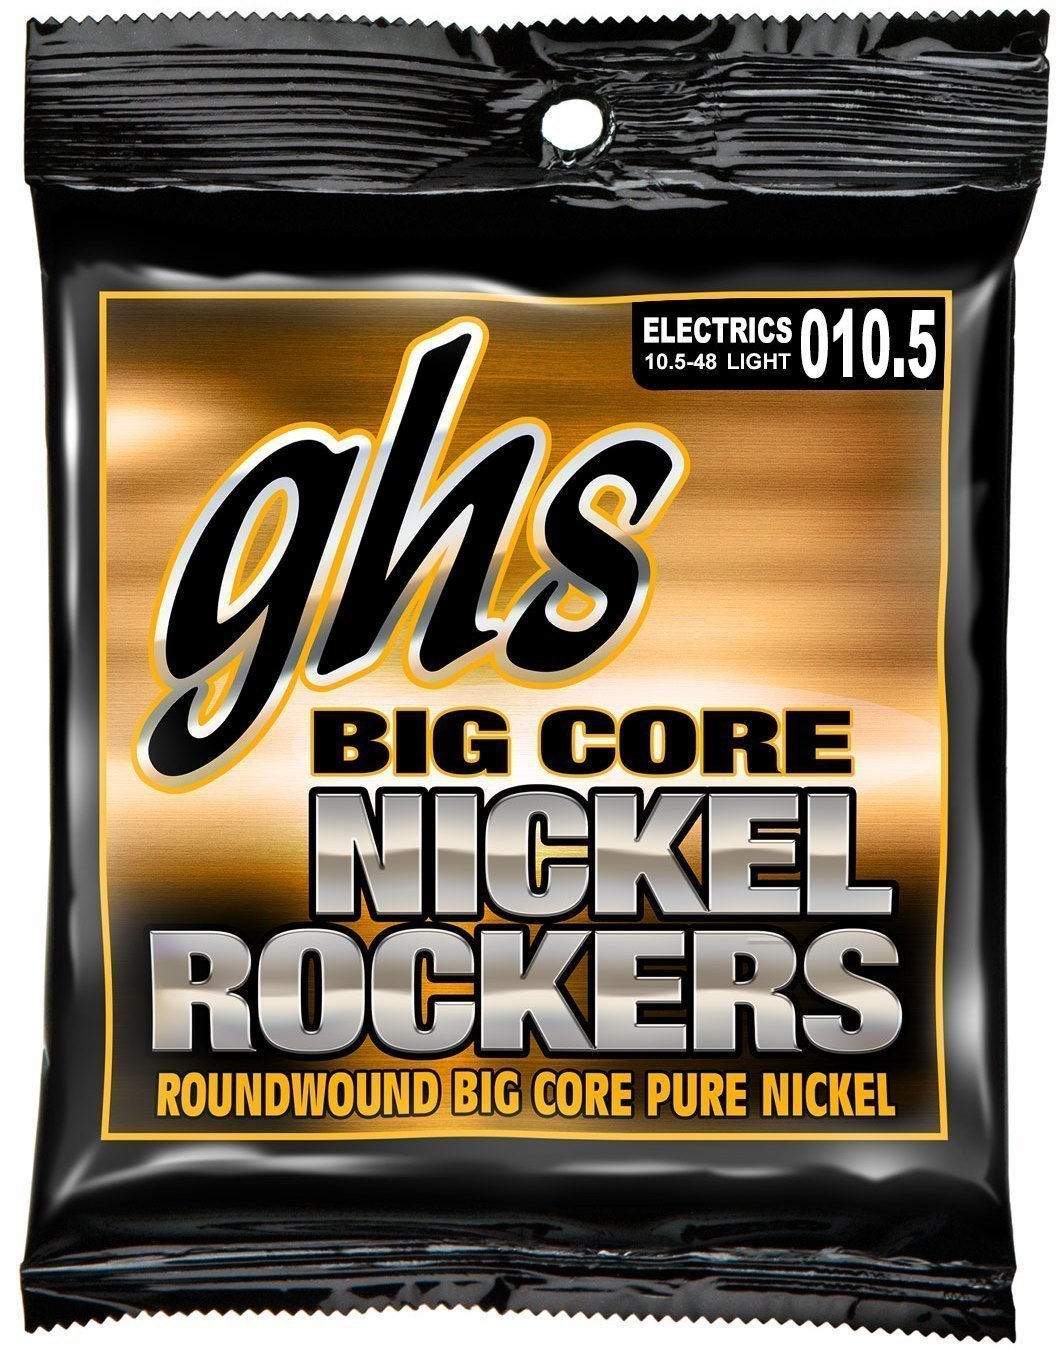 Elektromos gitárhúrok GHS Big Core Nickel Rockers 10,5-48